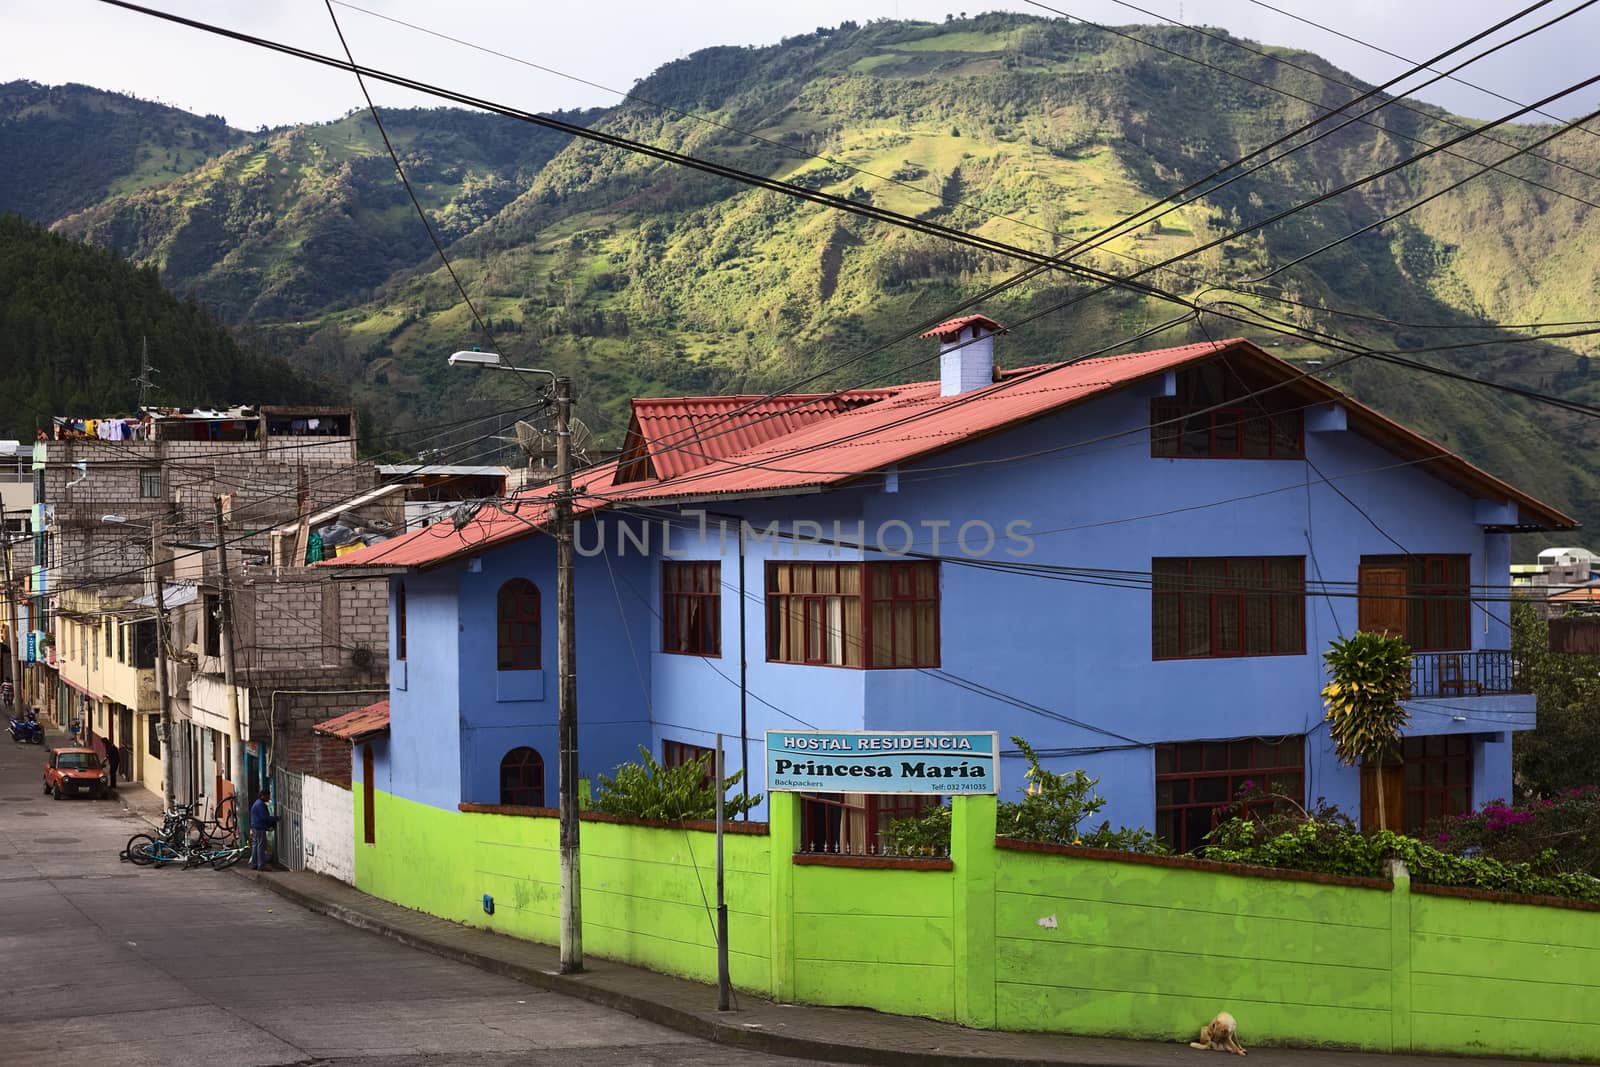 Hostal Residencia Princesa Maria in Banos, Ecuador by sven